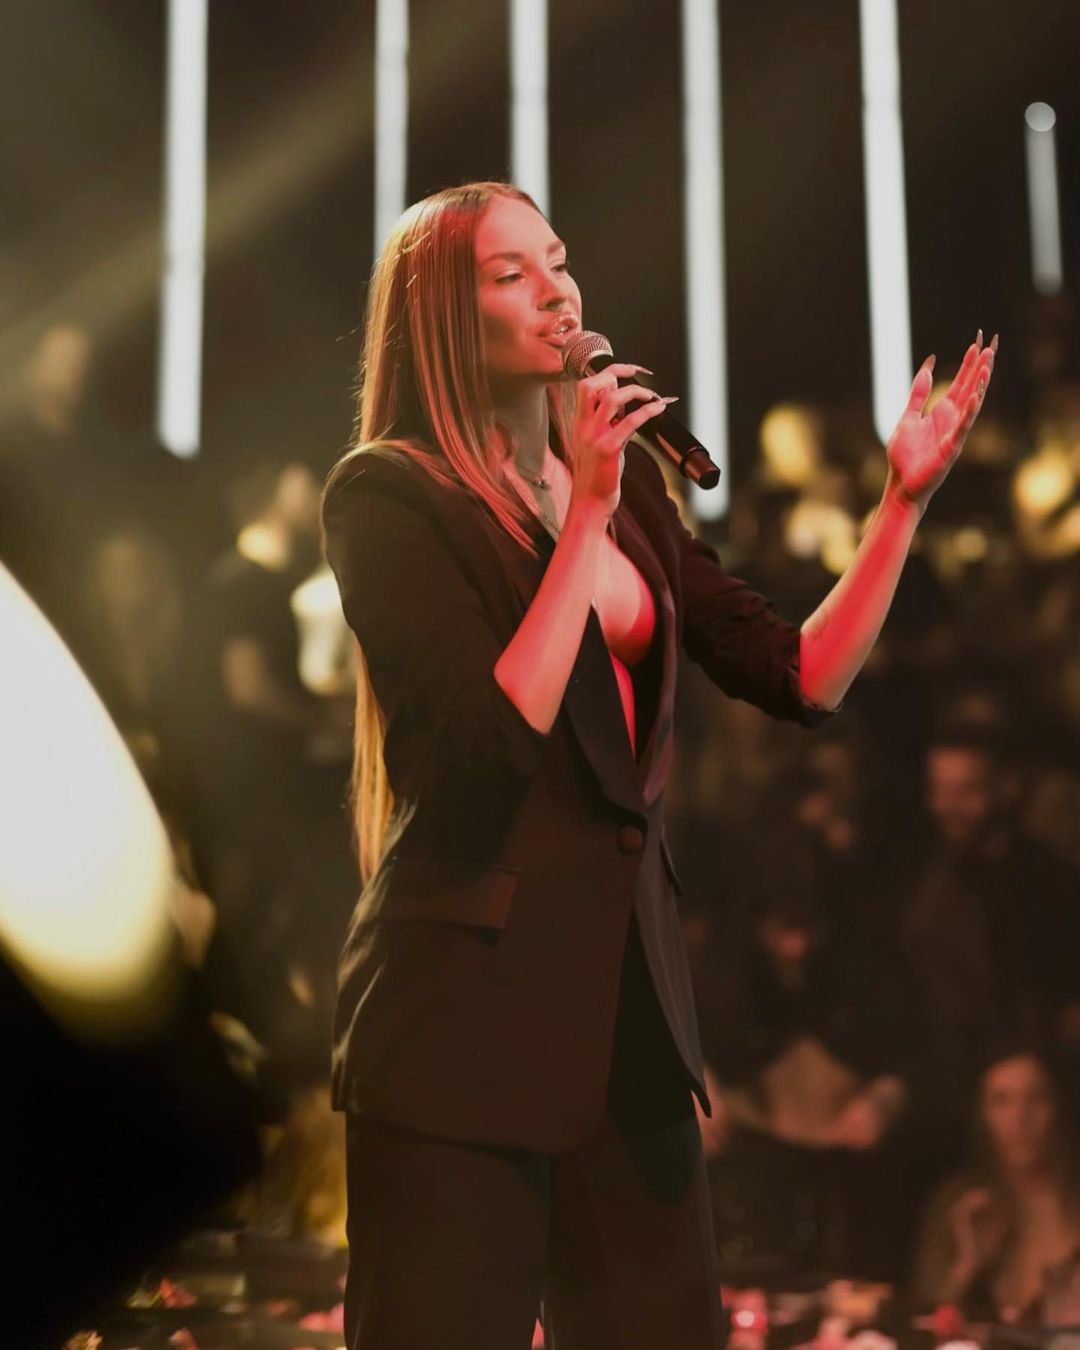 Ανδρομάχη: Χαμός με την Ελληνίδα τραγουδίστρια. Στην πίστα χωρίς σουτιέν και με ανοιχτό πουκάμισο